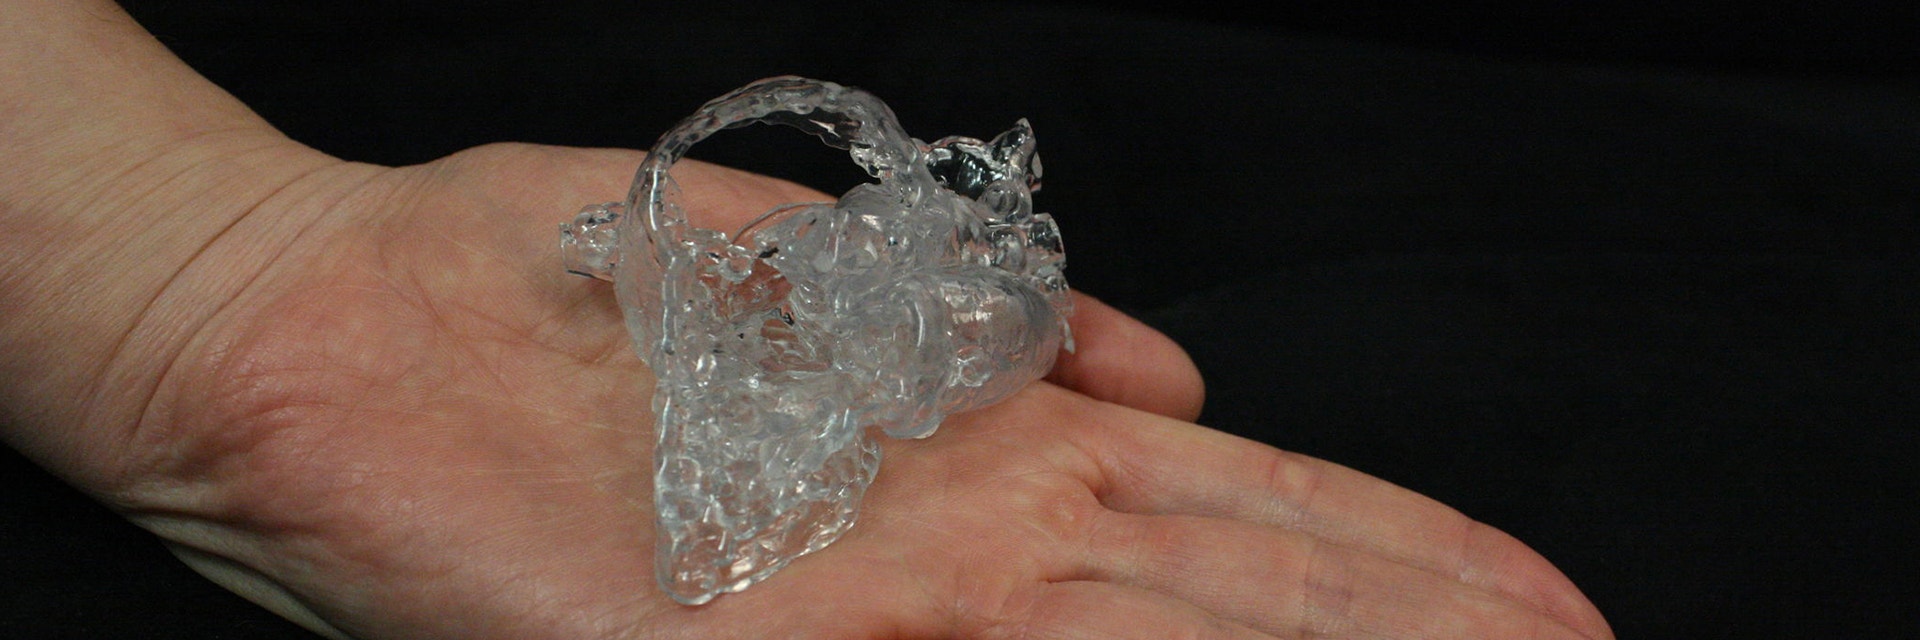 手のひらに座っている3Dプリントされた心臓モデル 